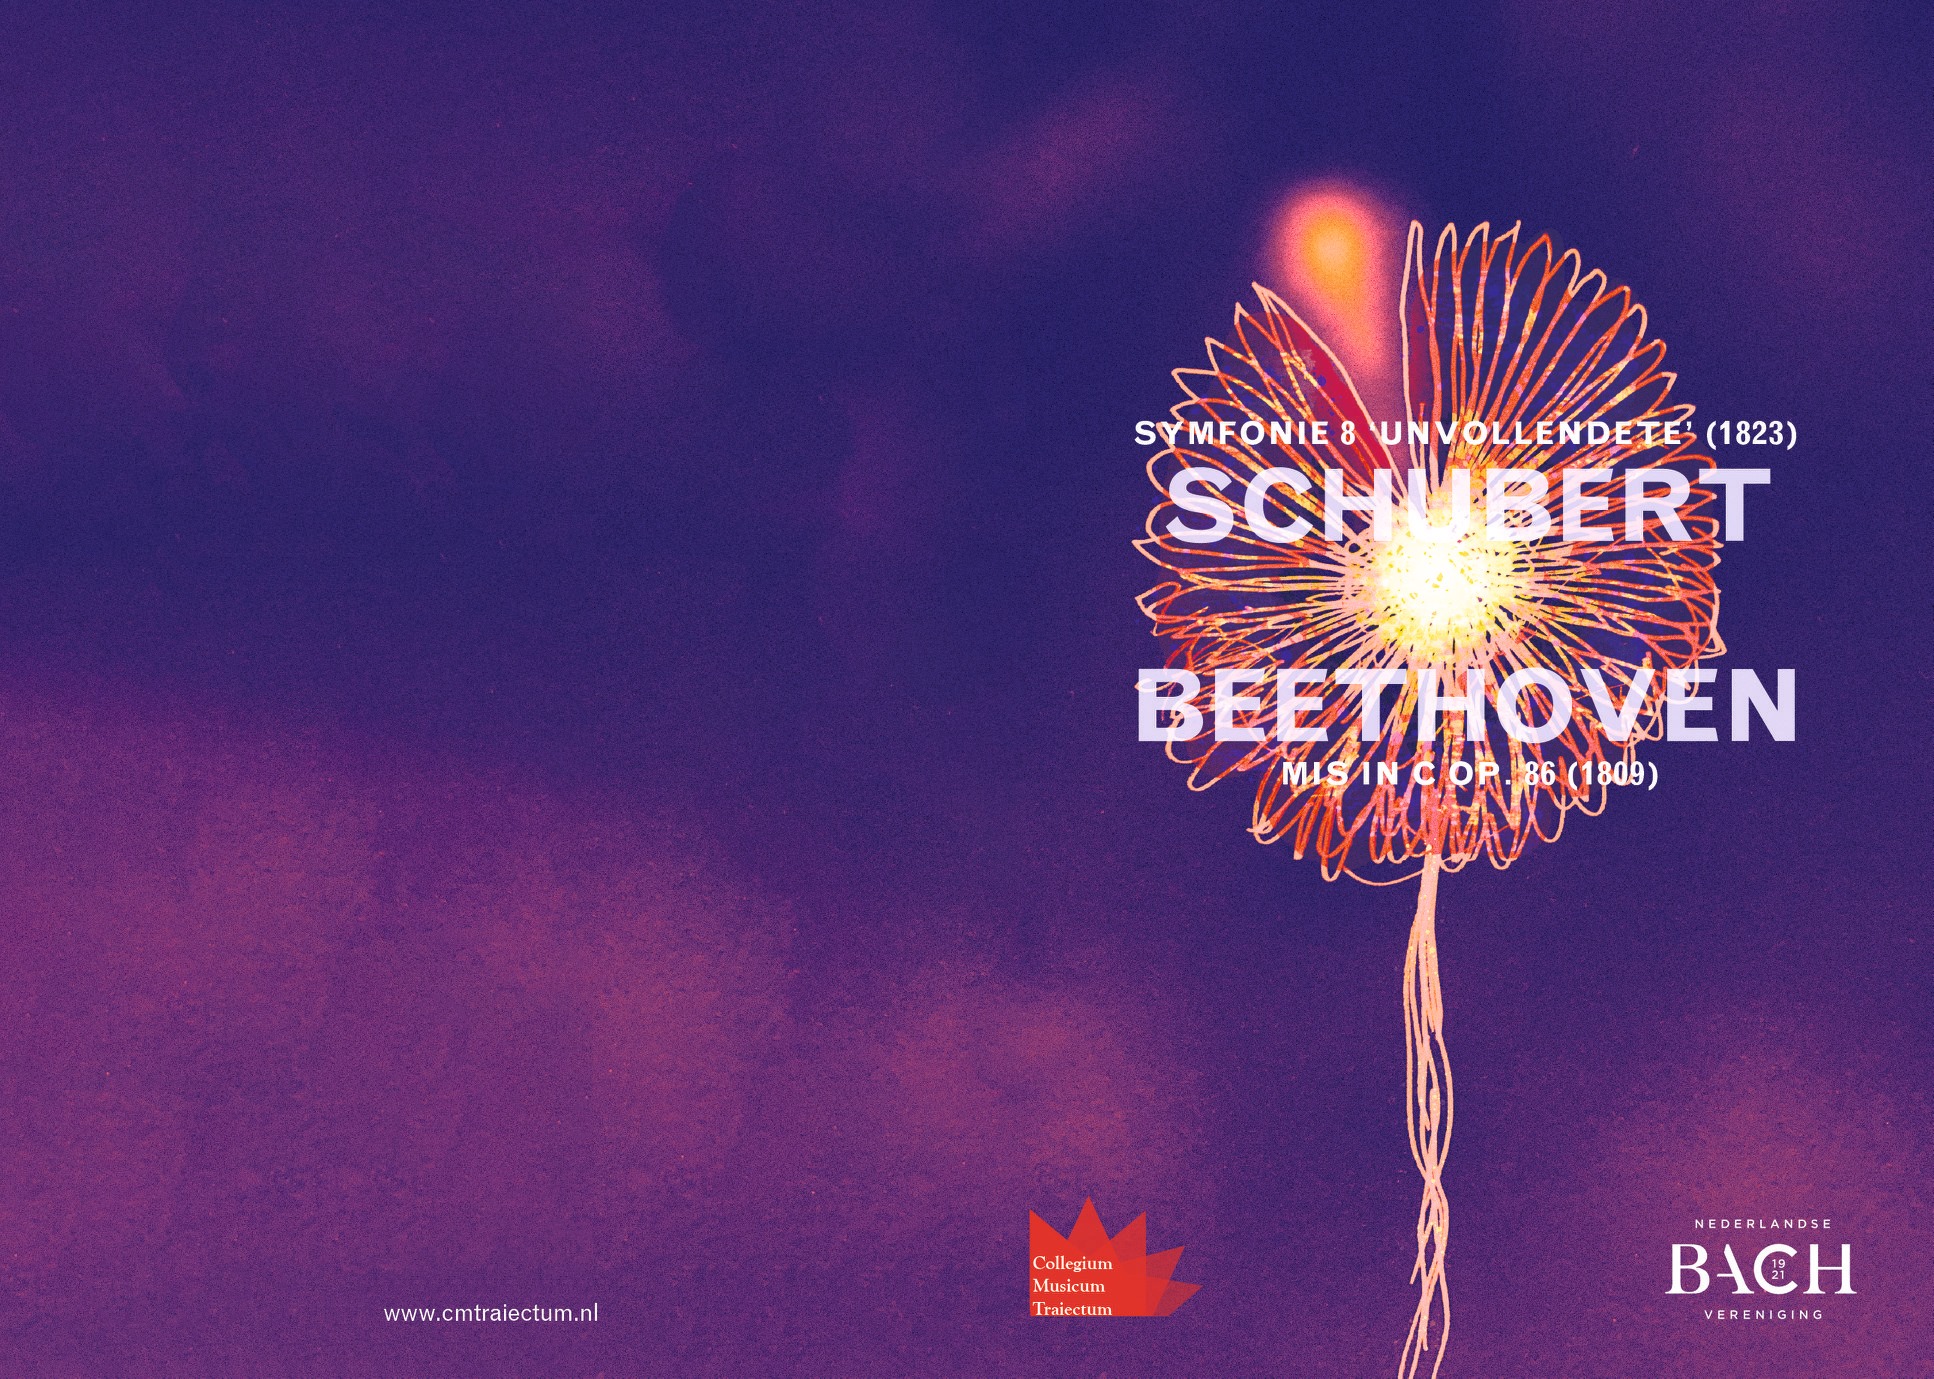 CMT ‘Winterse romantiek met Schubert en Beethoven’